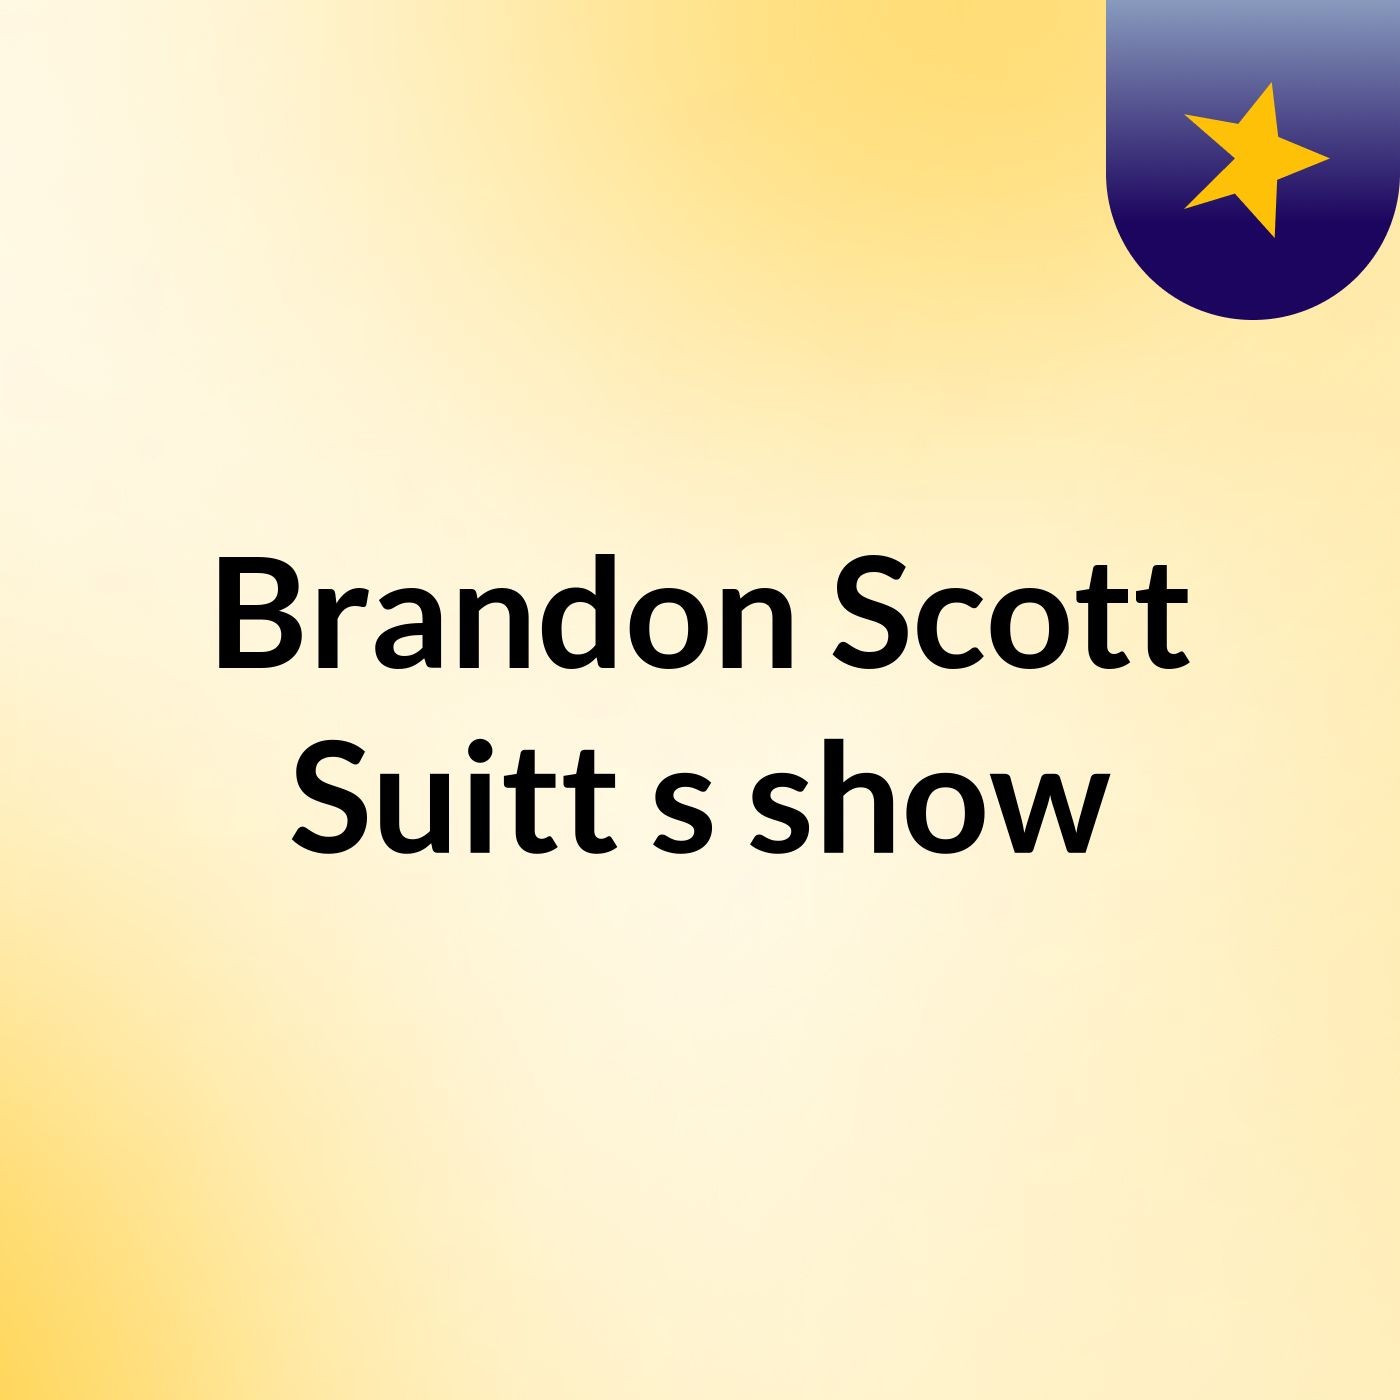 Brandon Scott Suitt's show